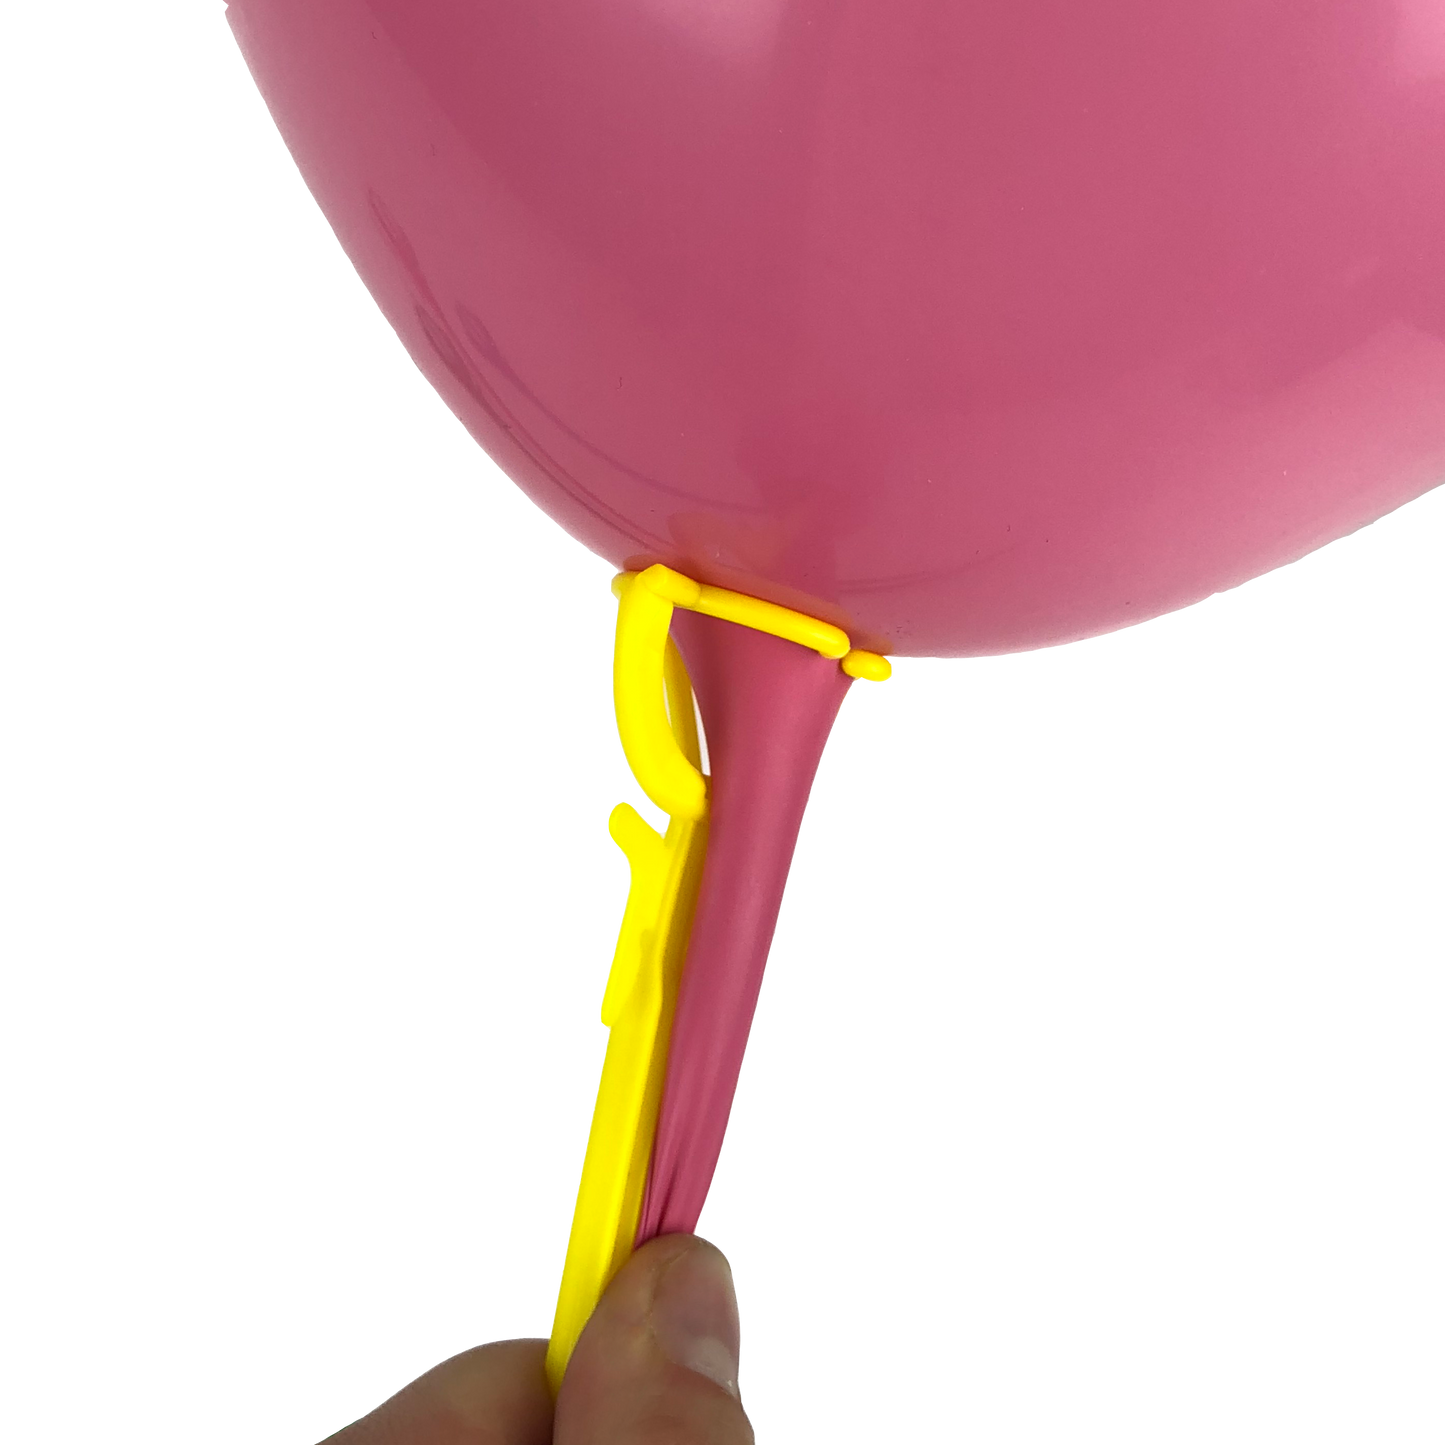 ZBS-011 - Einteilige grüne Ballon-Haltestäbe 35 cm